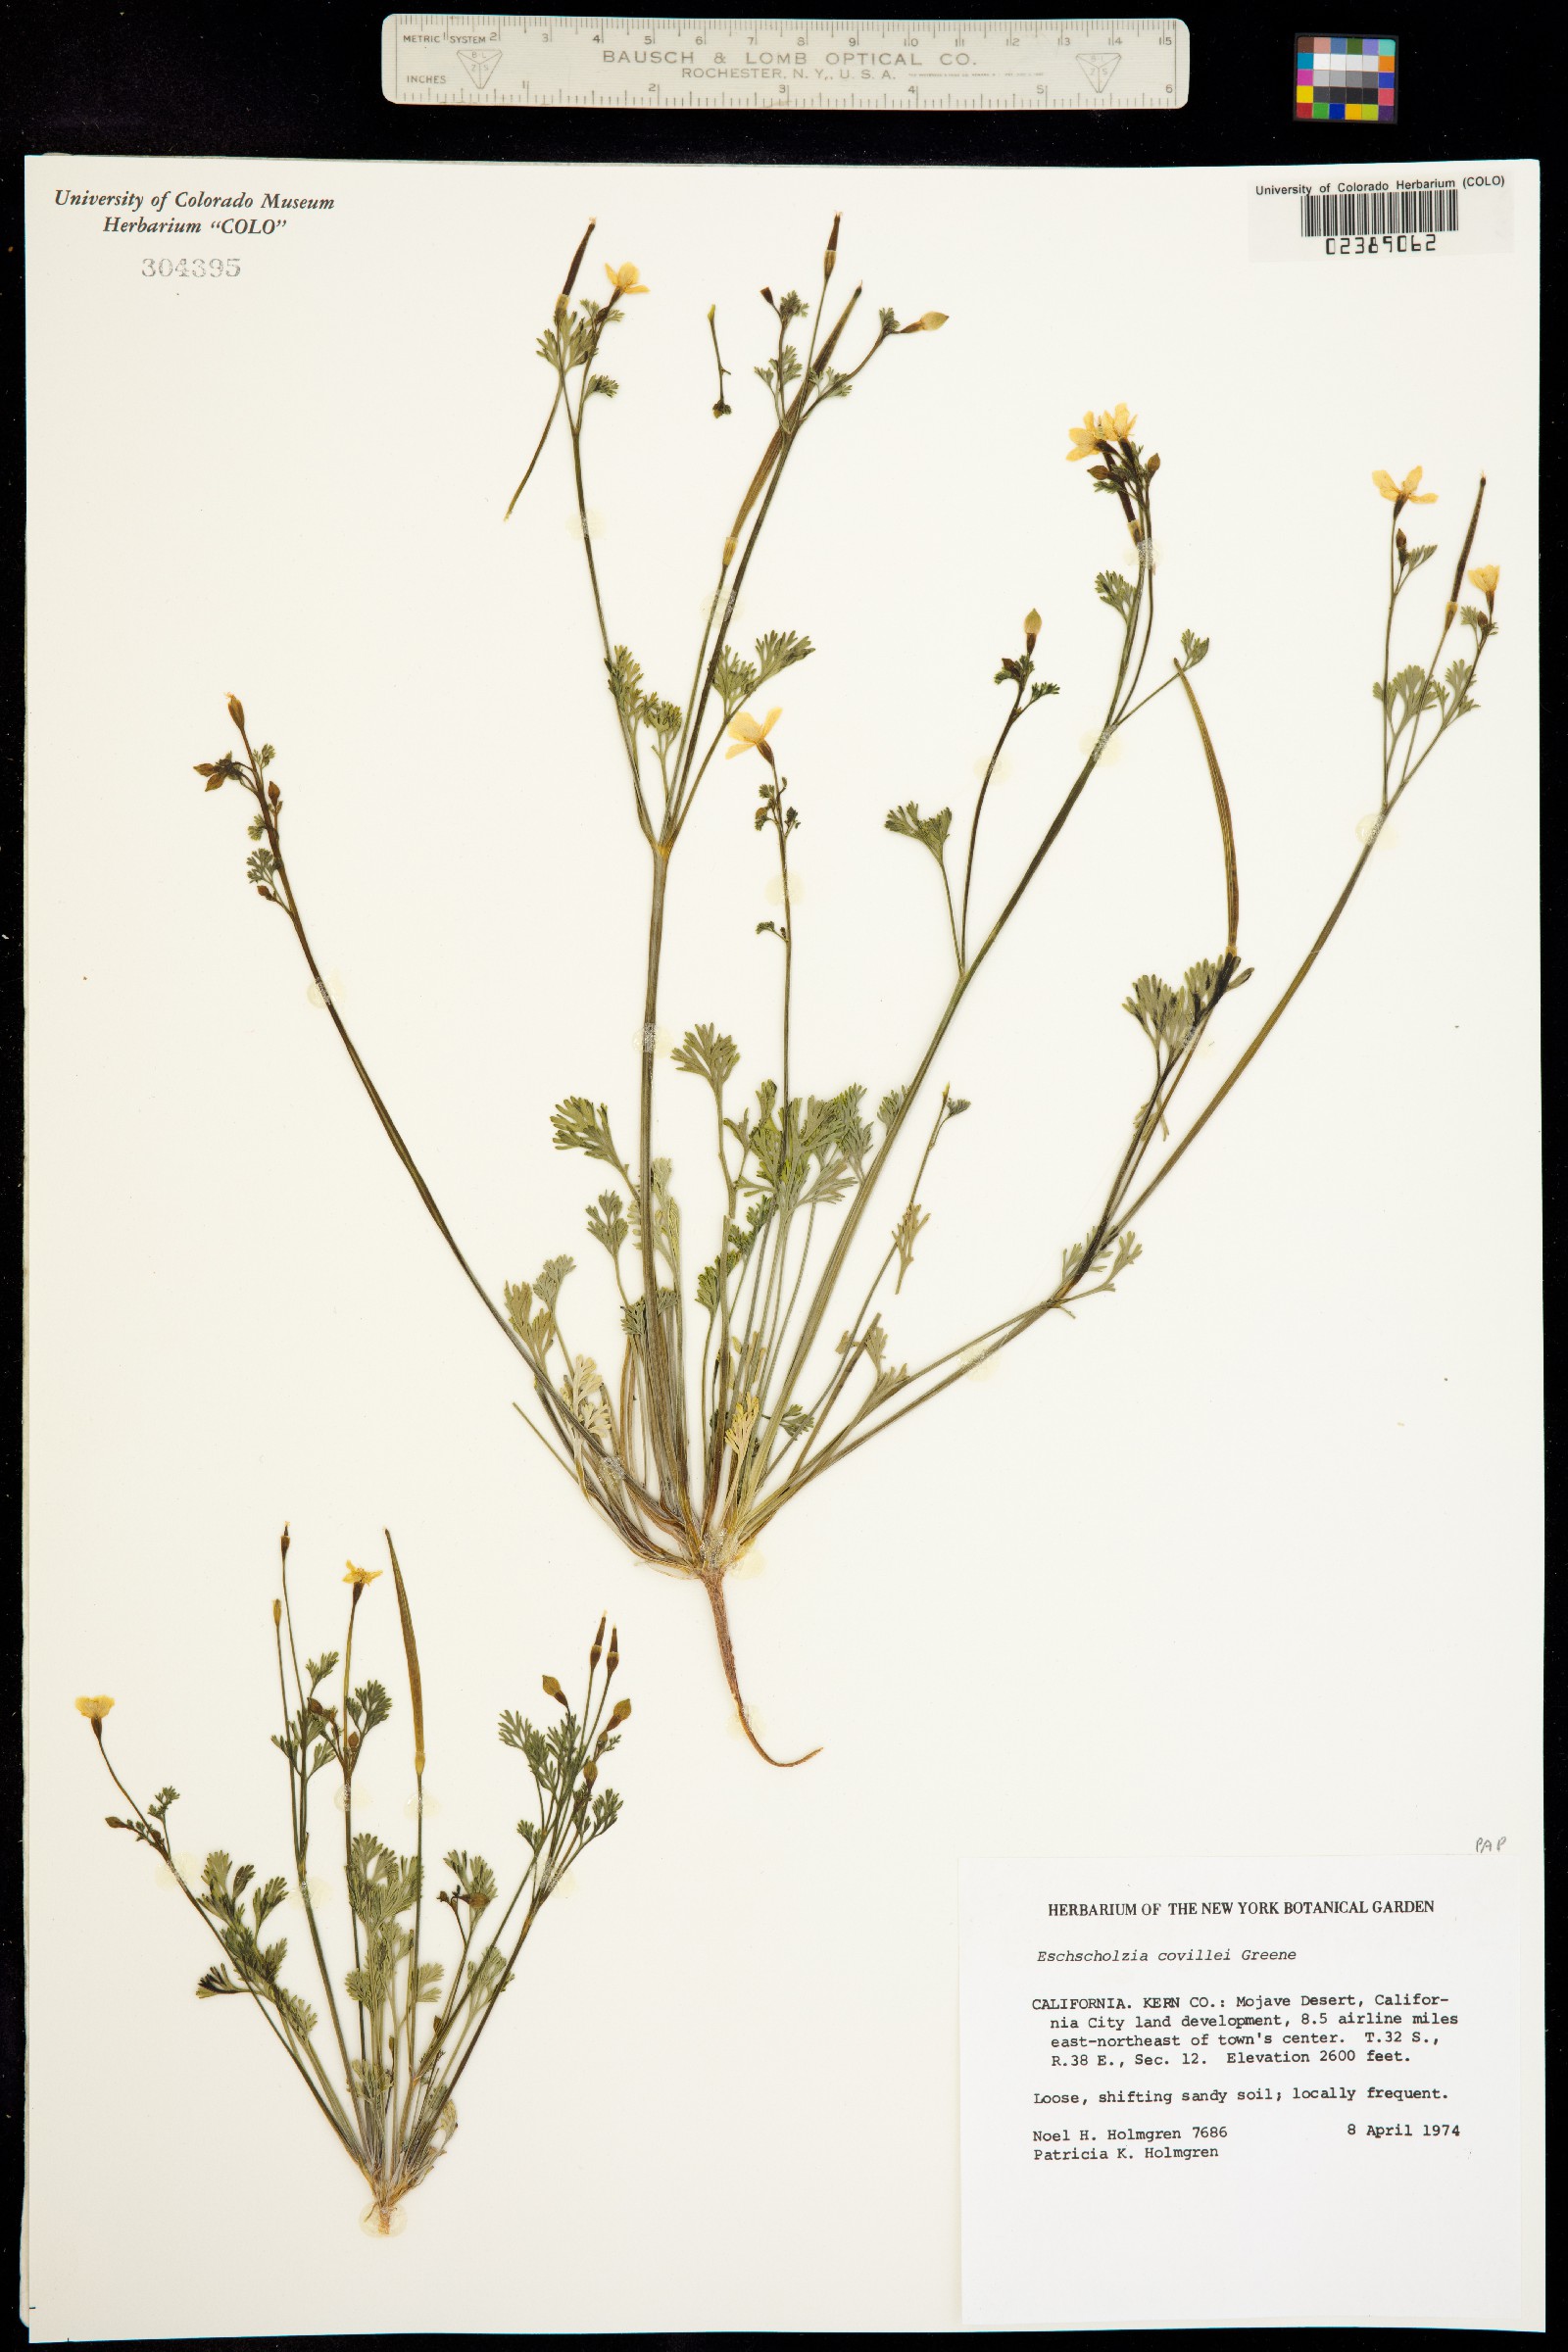 Eschscholzia minutiflora ssp. covillei image